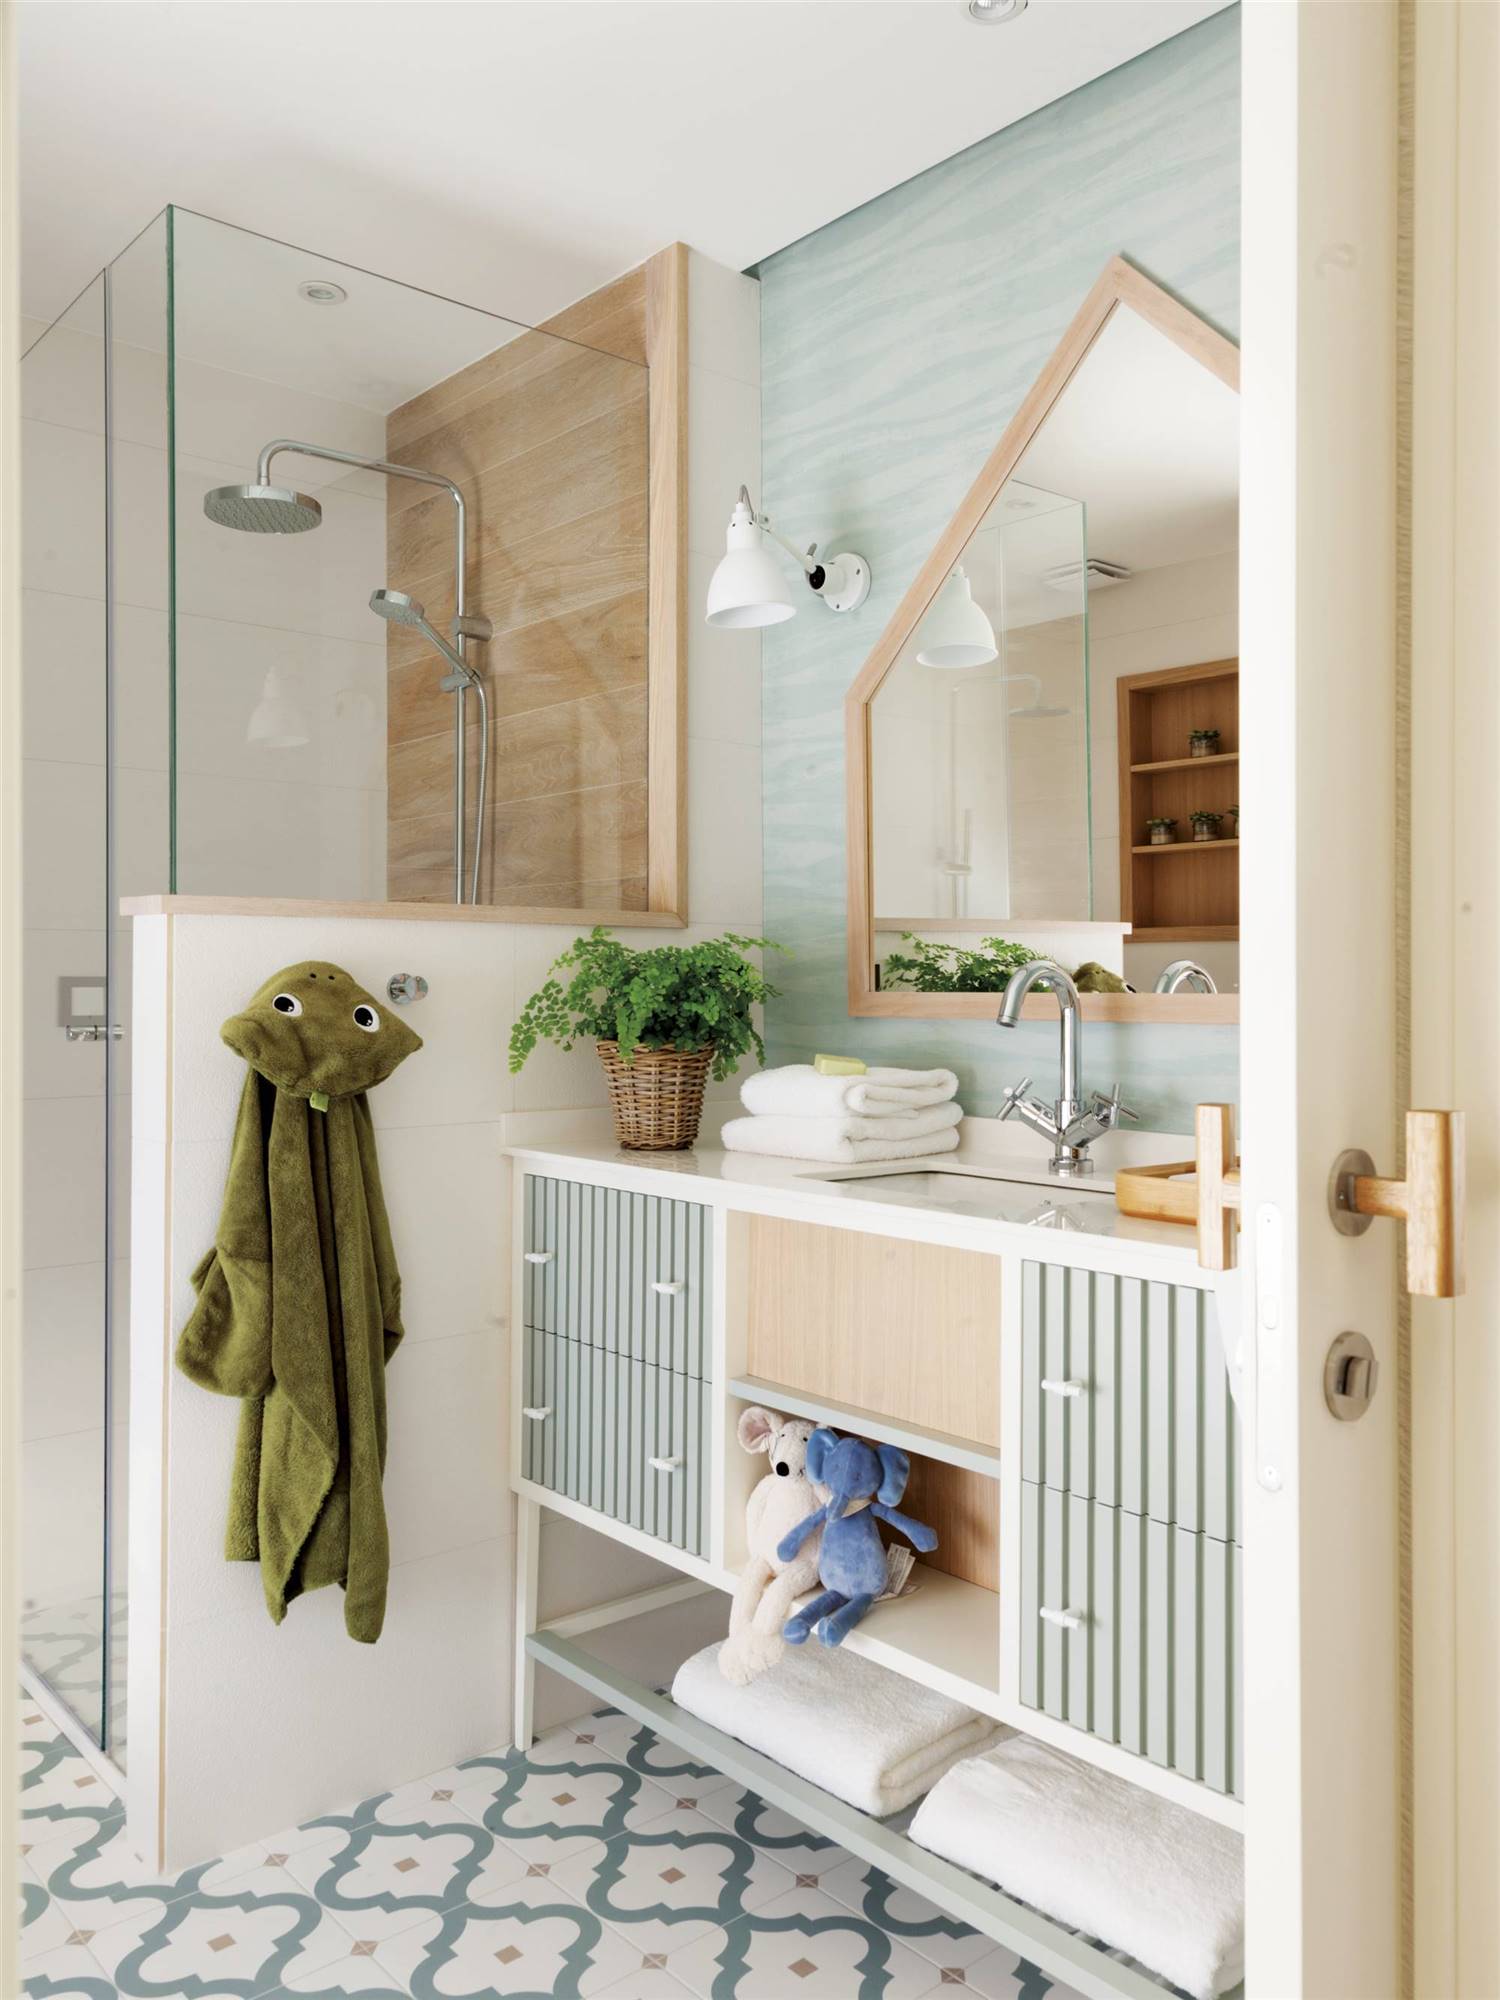 Baño infantil con ducha de obra, baldosa estilo hidráulico, espejo en forma de casita y papel pintado azul aguamarina a juego con el mueble.